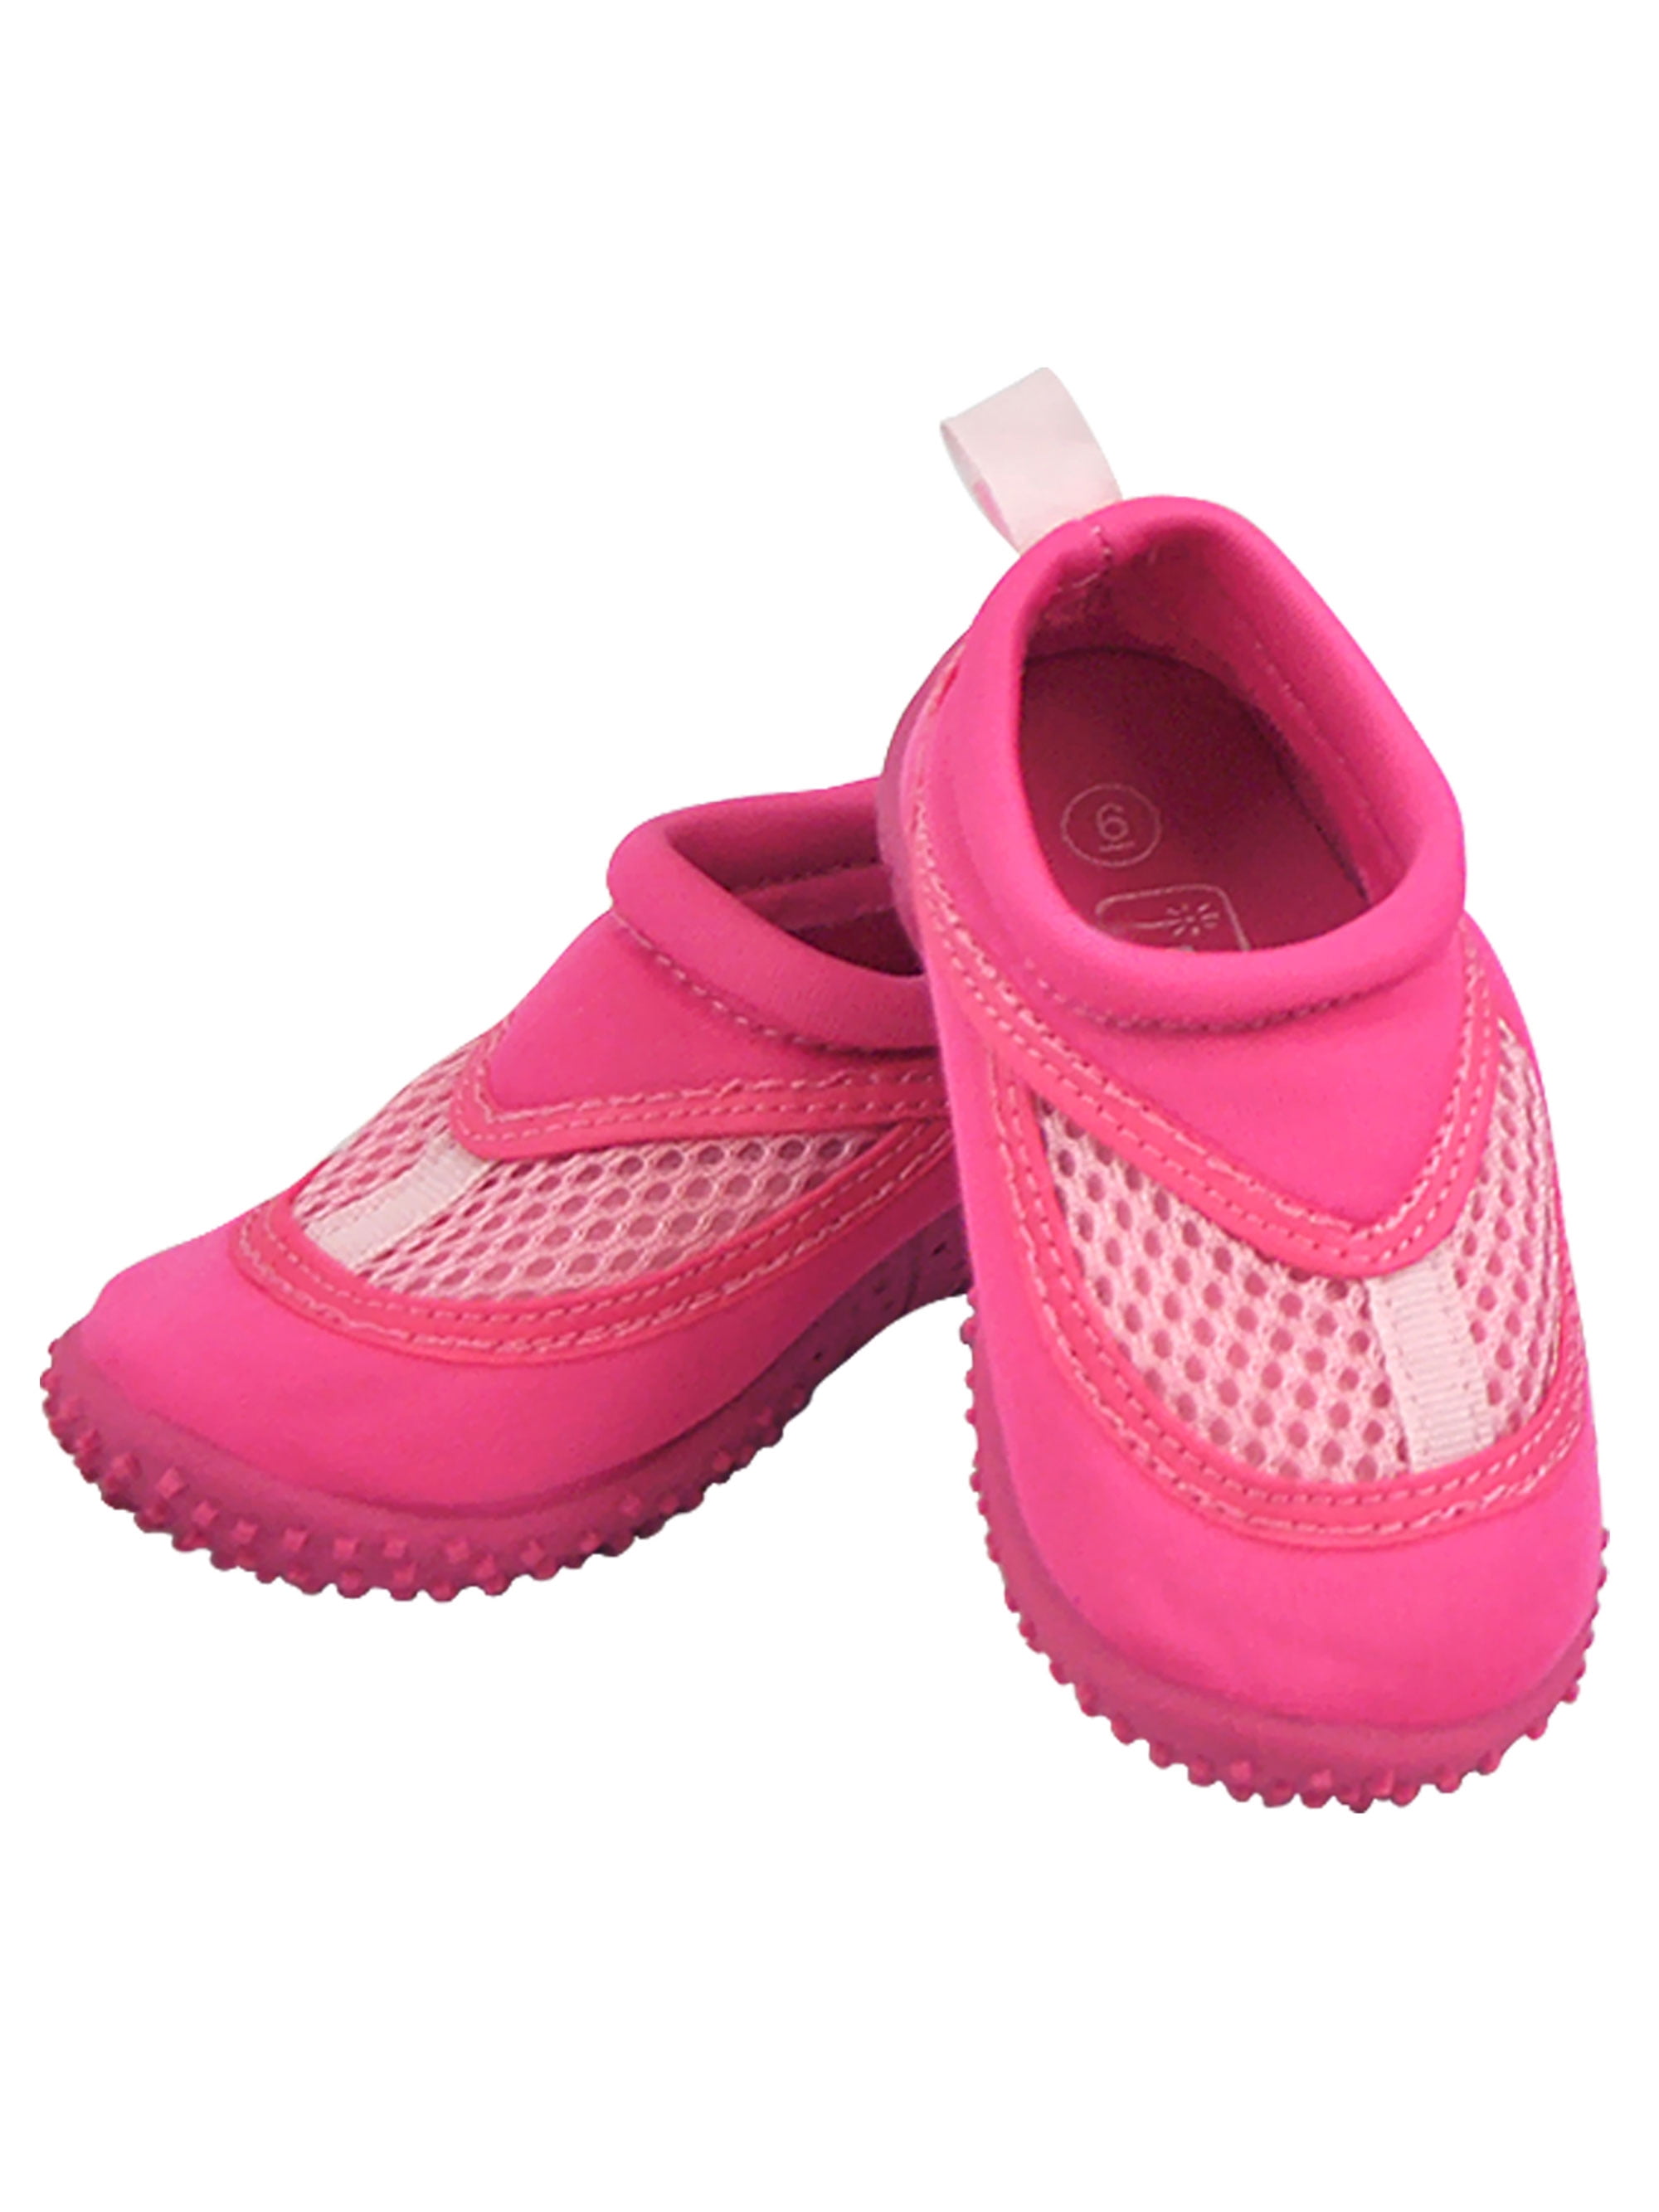 childrens aqua water shoes